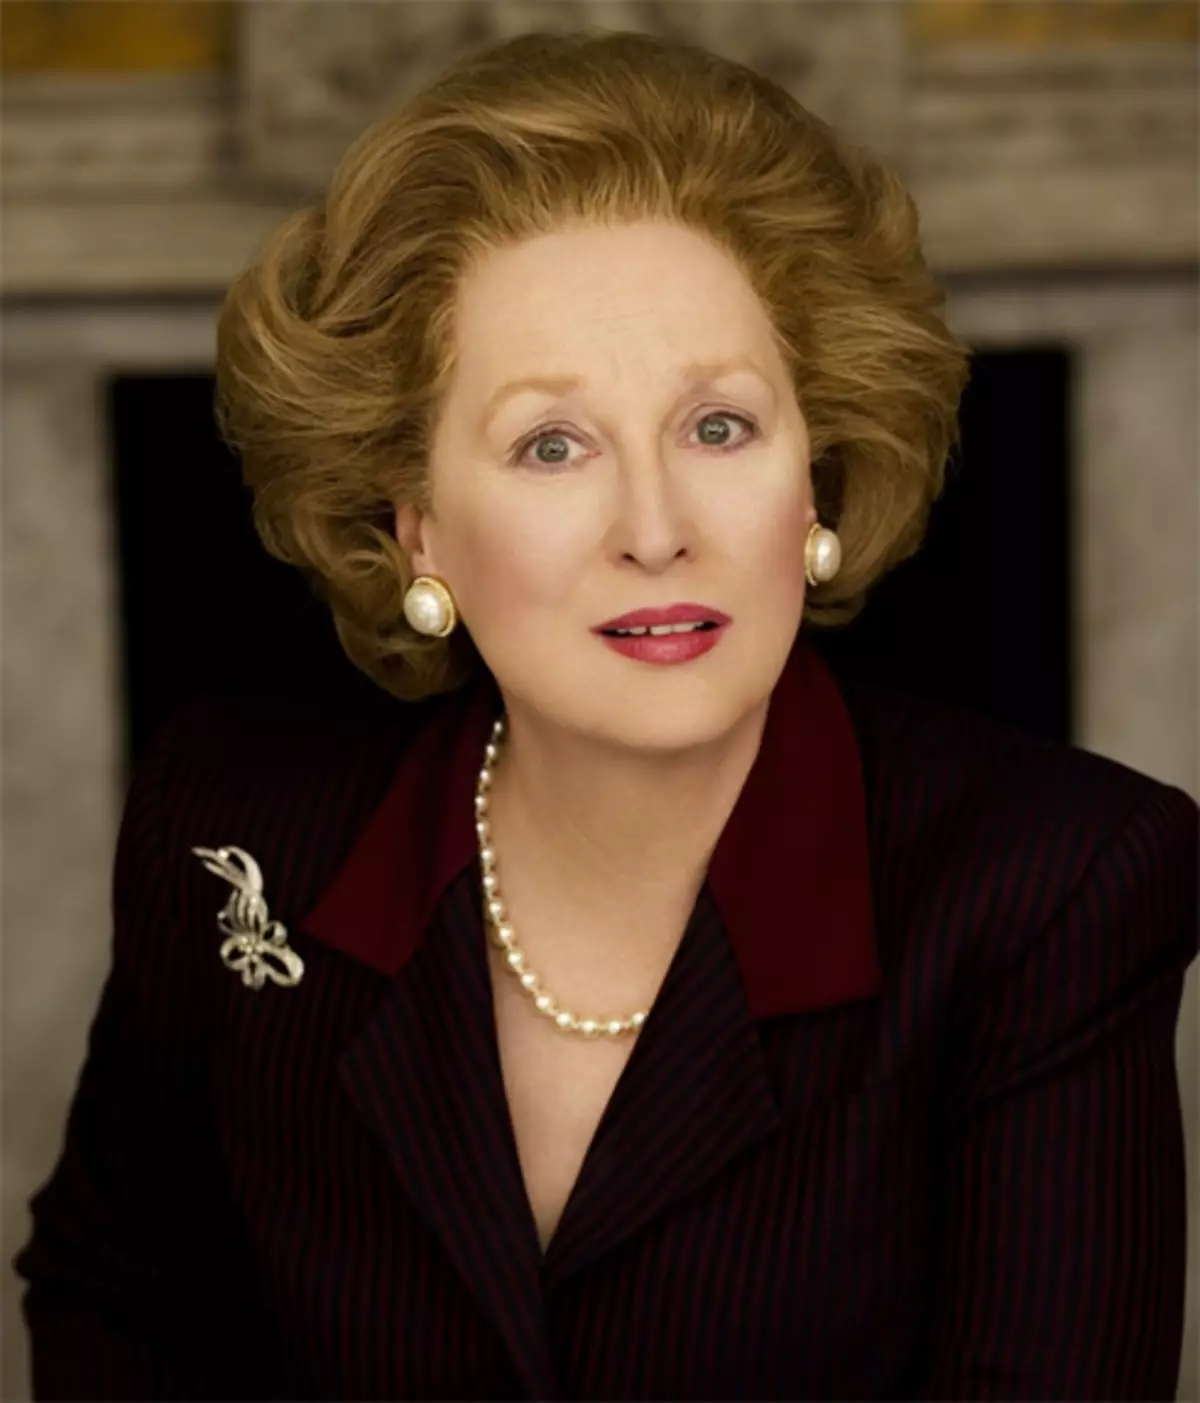 Le rôle de Thatcher dans le film "Iron Dame" a effectué la mesure brillante de la bande et a reçu Oscar pour cela. Mais la plupart des héroïnes n'aimaient pas la photo